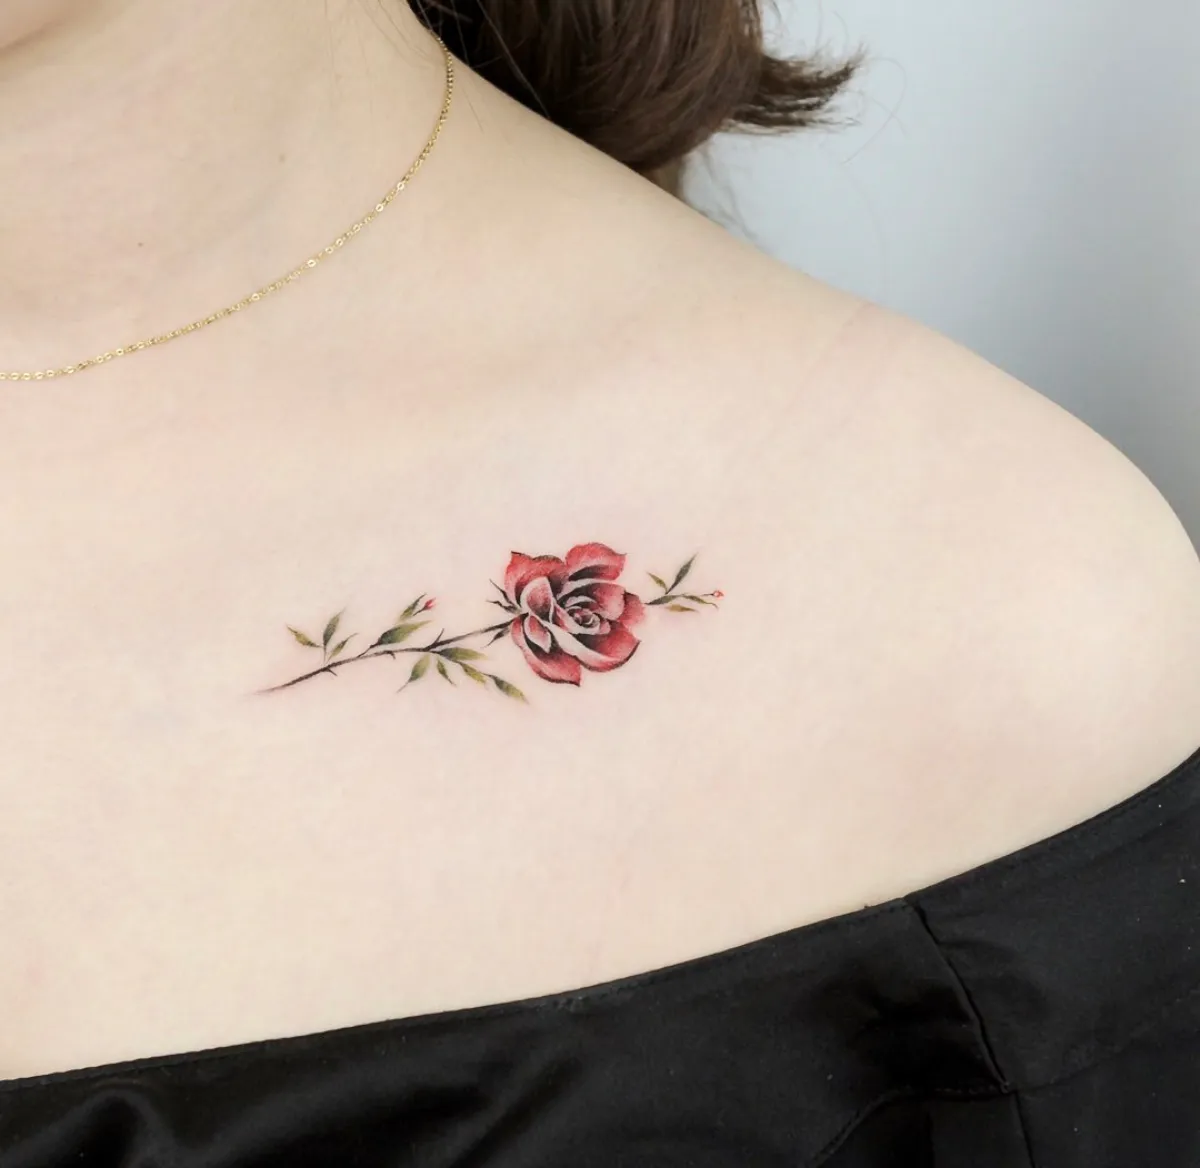 kleines tattoo am schulter rote rose blumentattoo